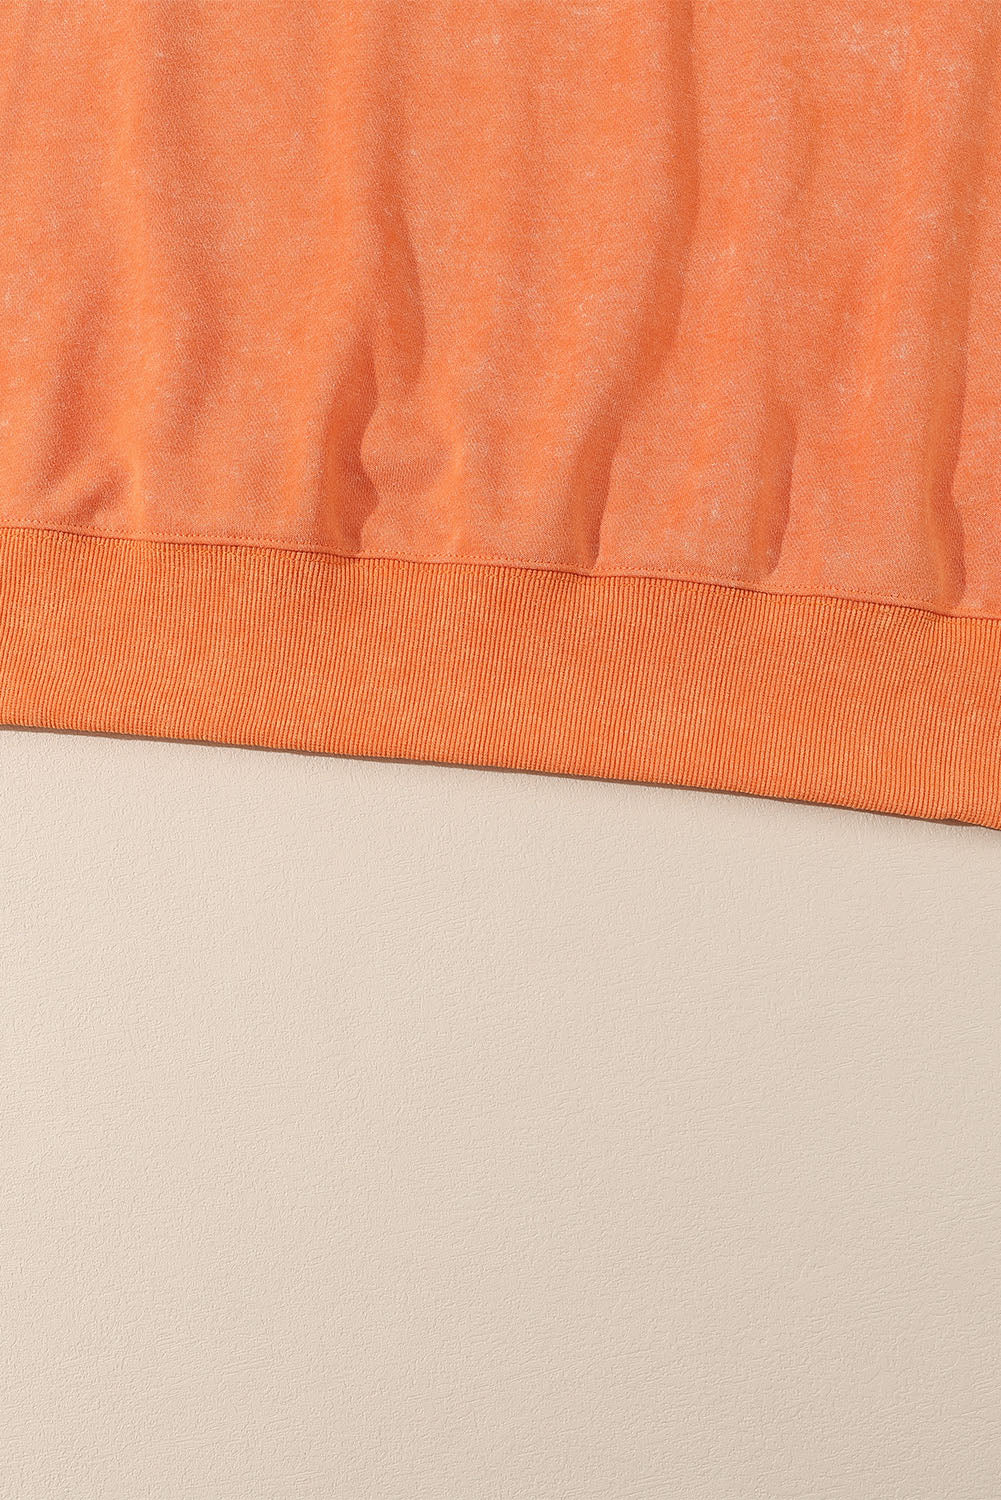 Ogromen pulover z rebrastimi obrobami v barvi grenivke in pomaranče